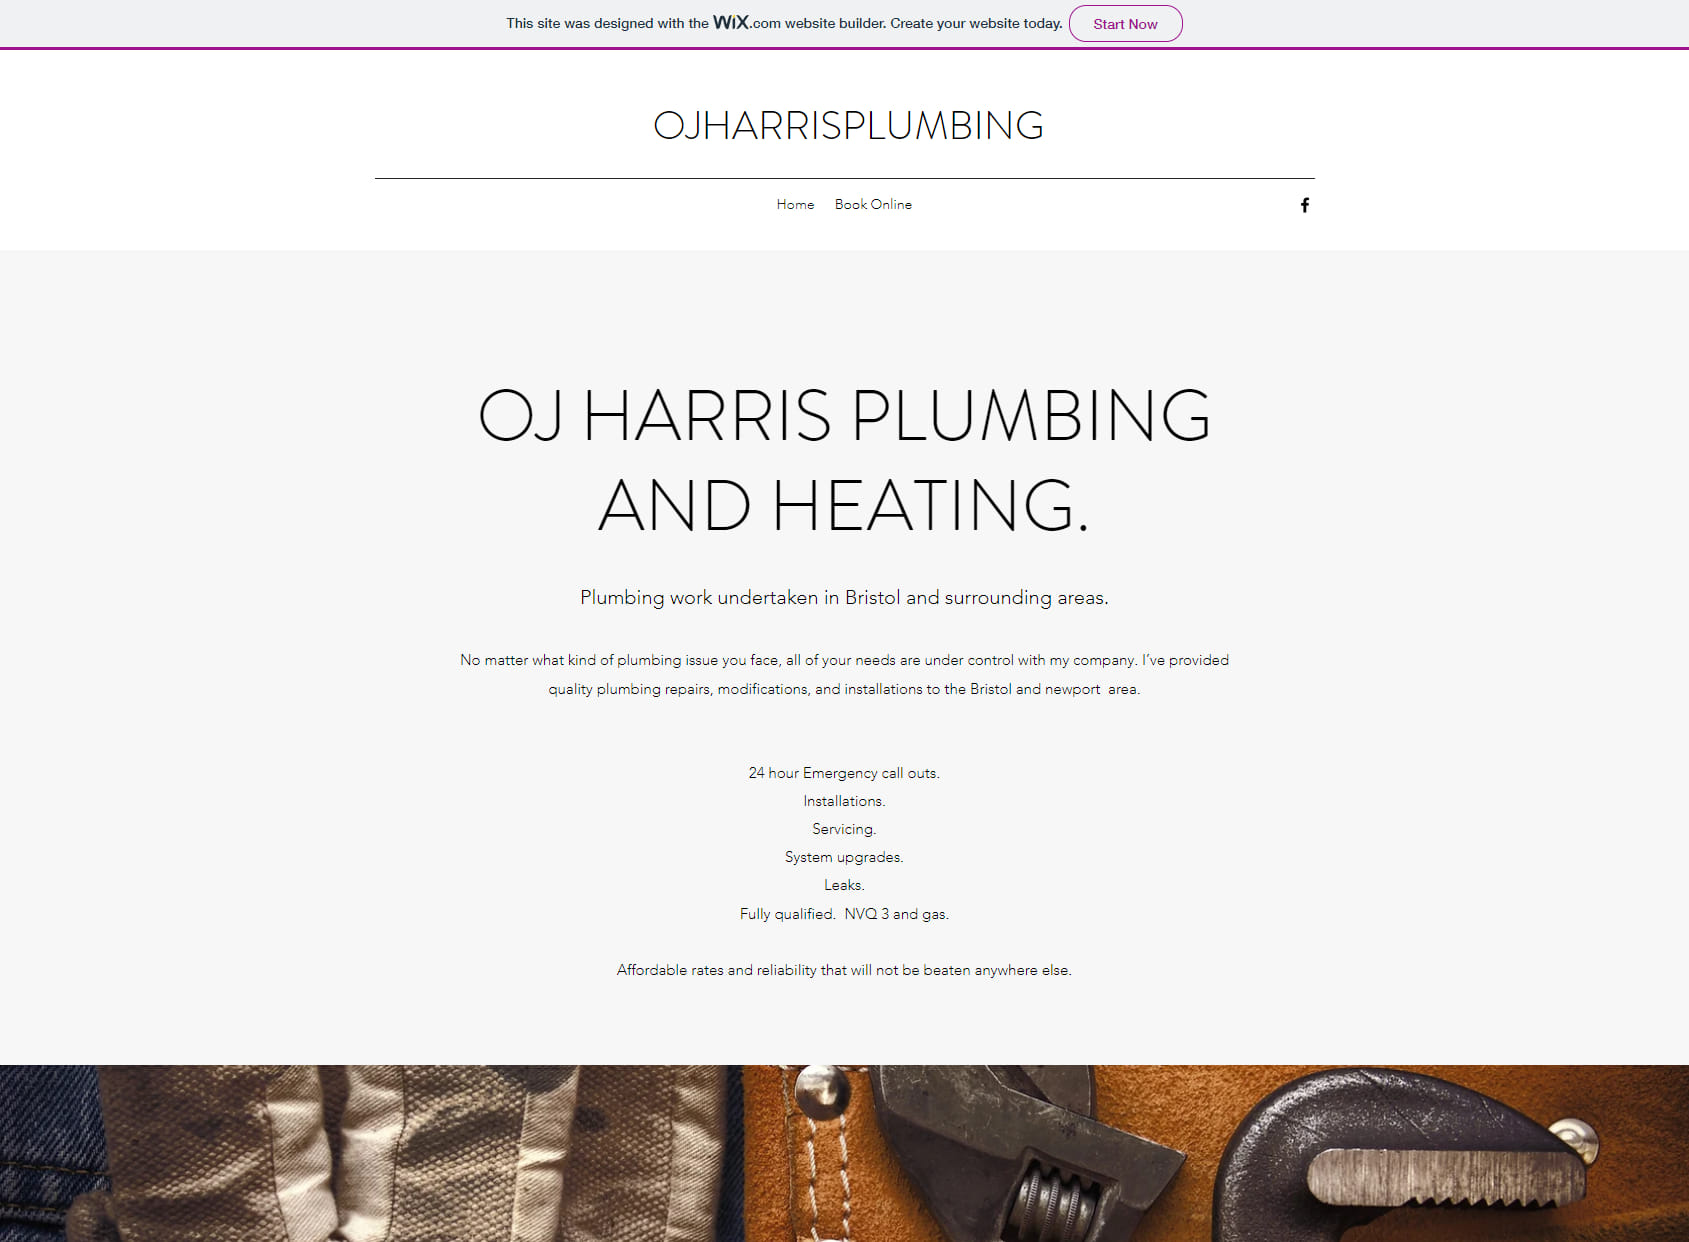 OJ Harris Plumbing and heating